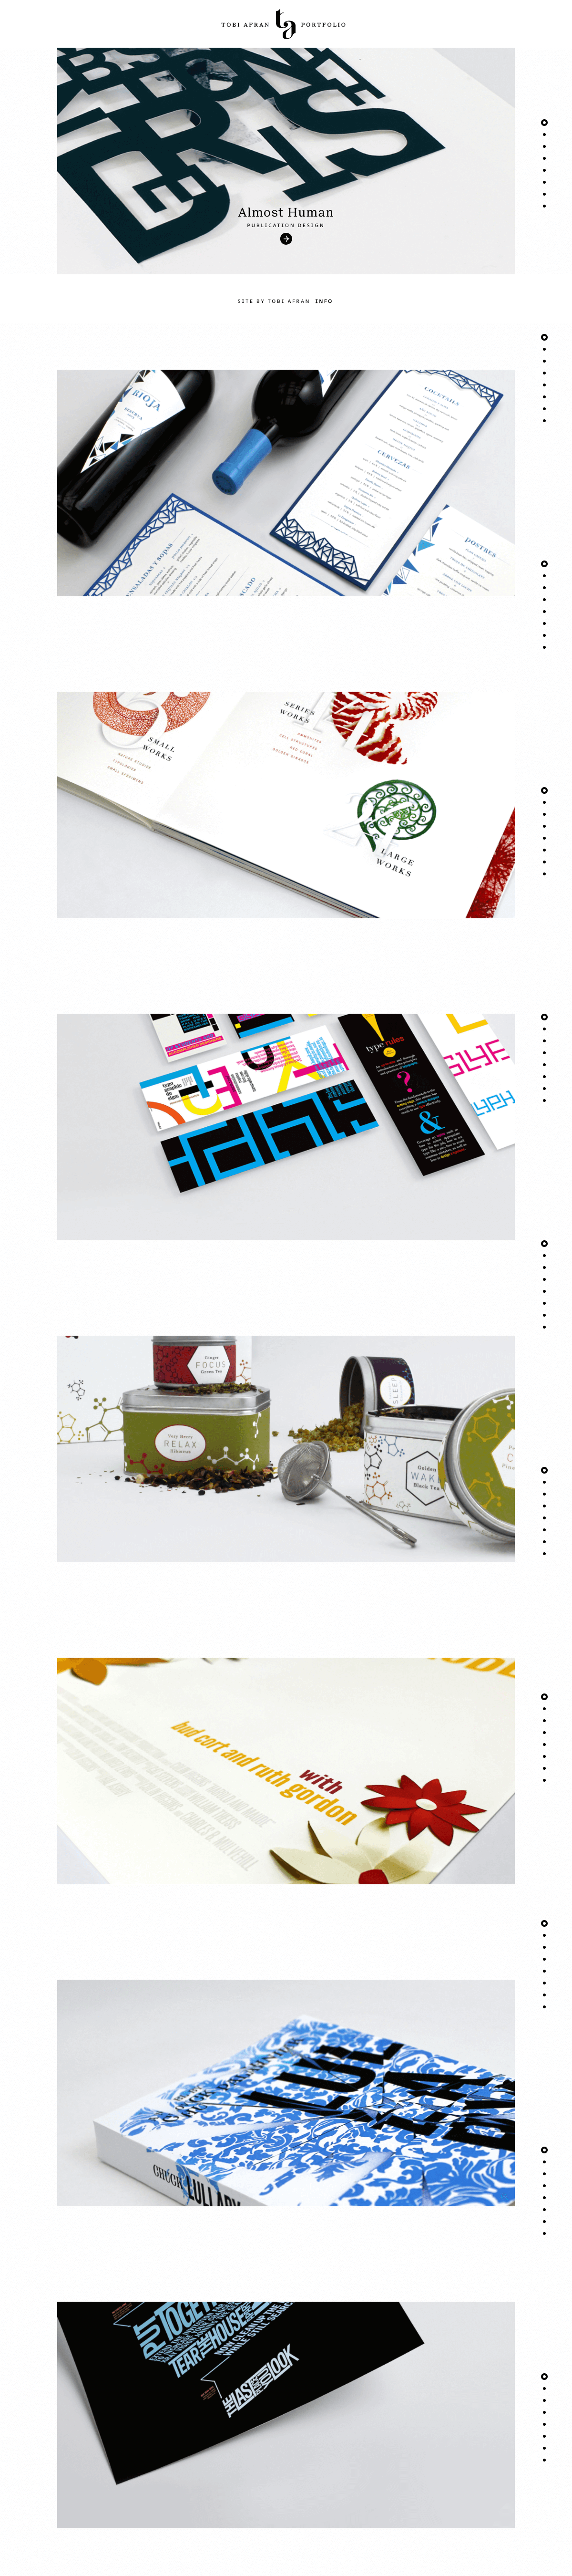 Tobi Afran – Graphic Design